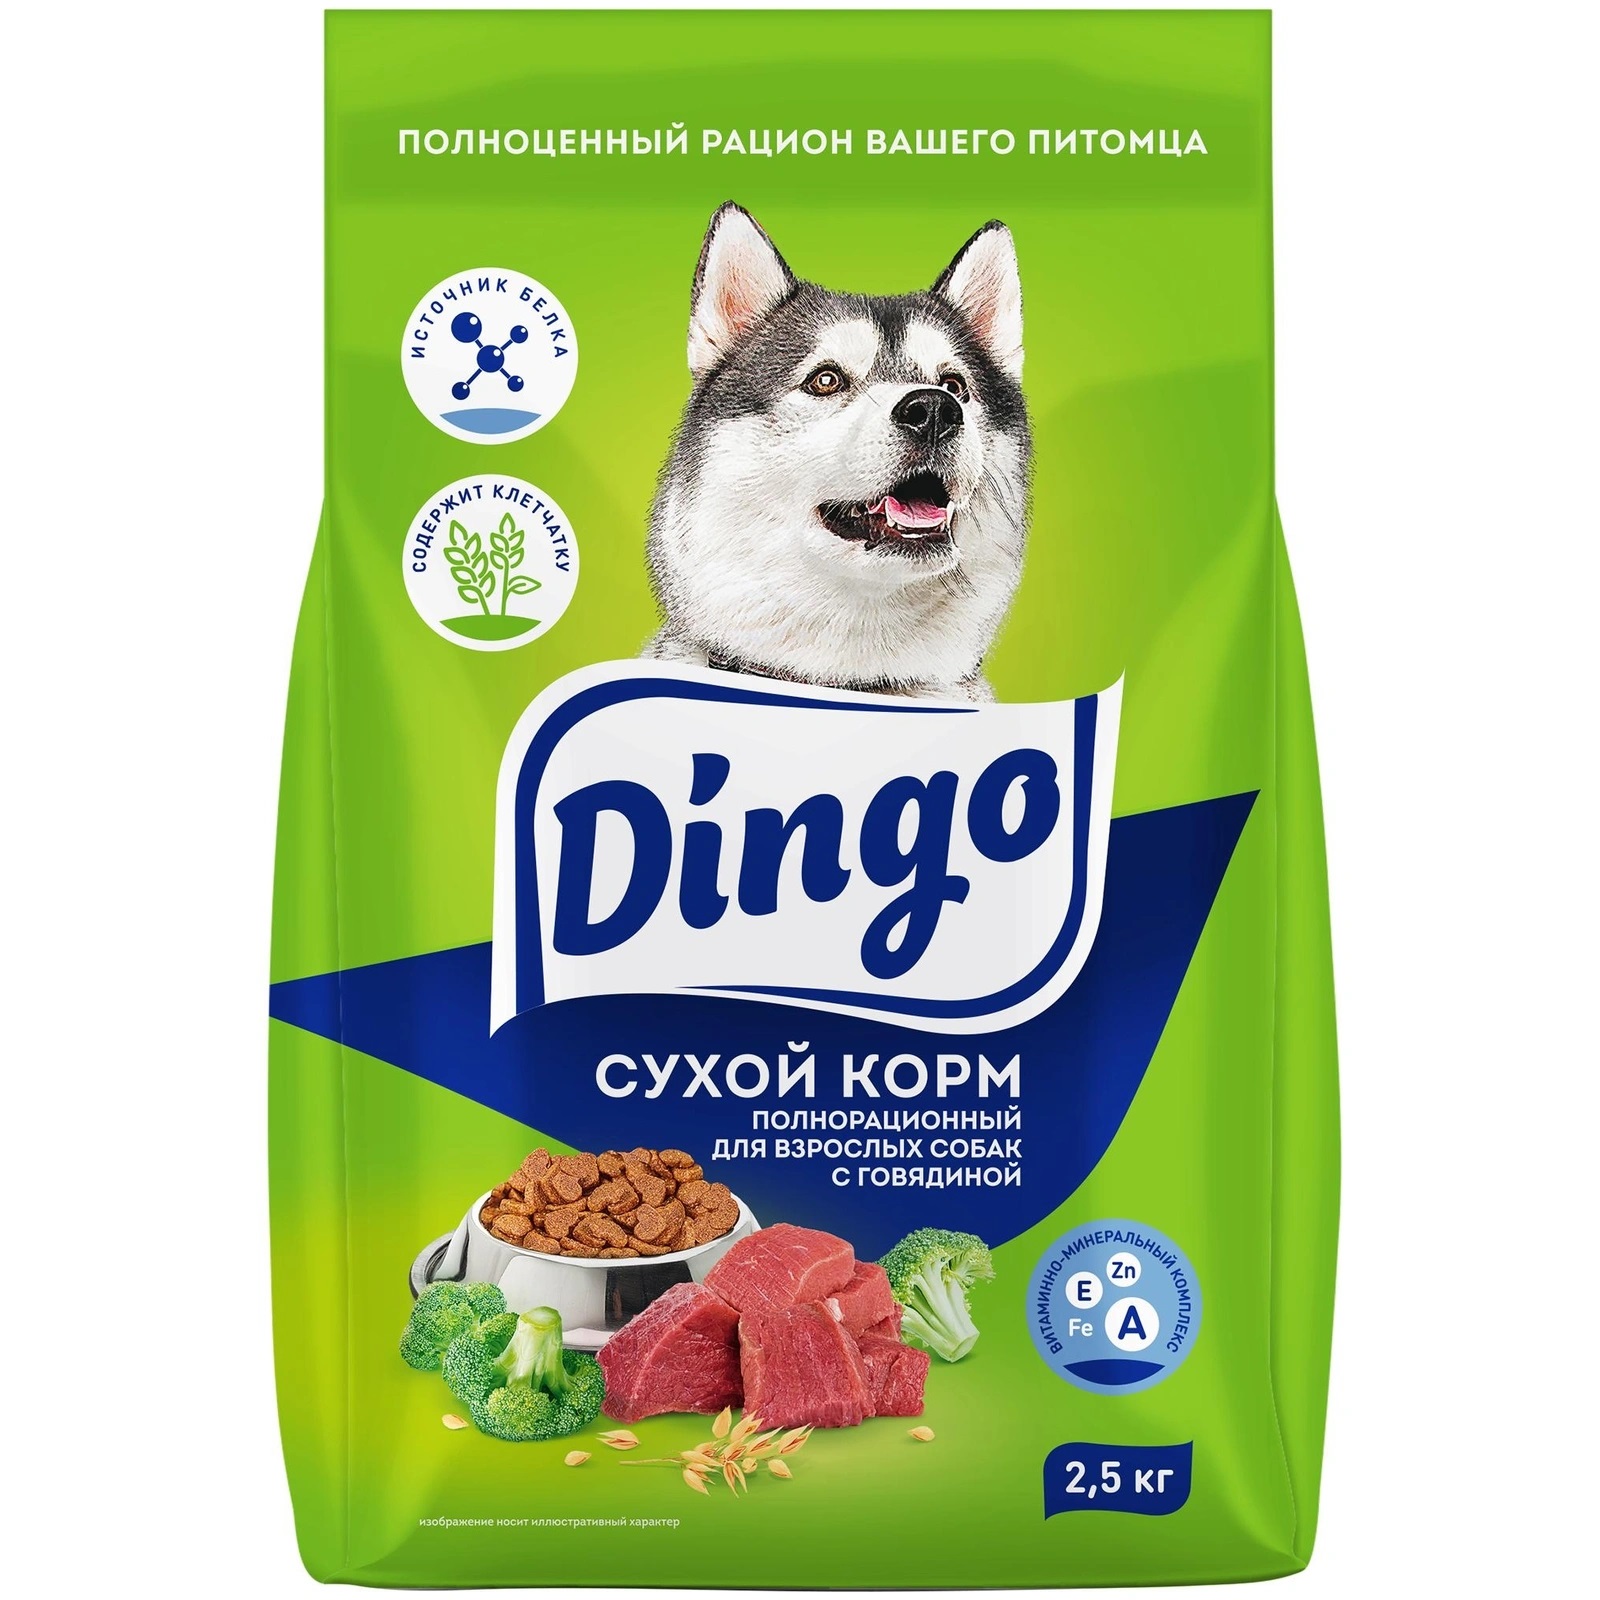 Сухой корм для взрослых собак Dingo с говядиной, 2,5 кг